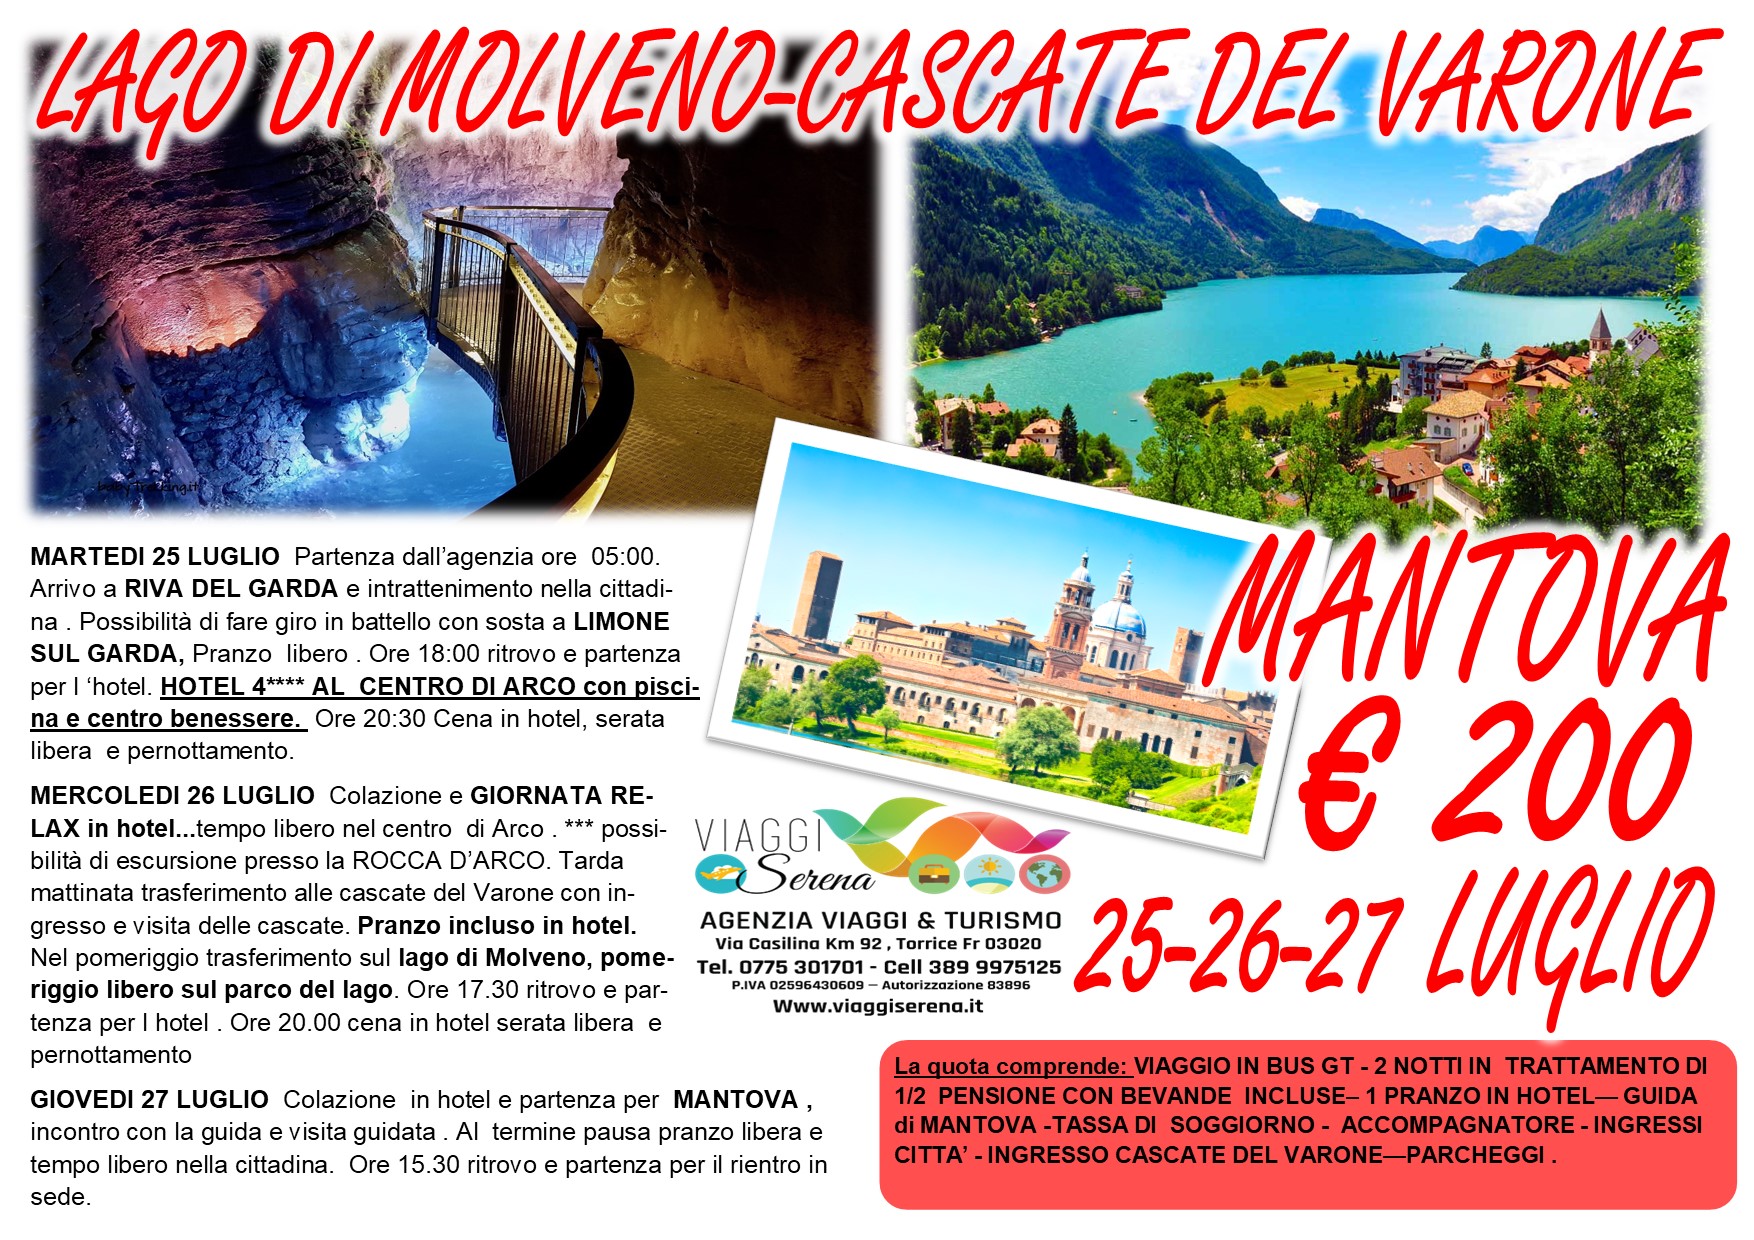 Viaggi di Gruppo: Riva del Garda, Lago di MOLVENO, Cascate del Varone & Mantova 25-26-27 Luglio € 200,00